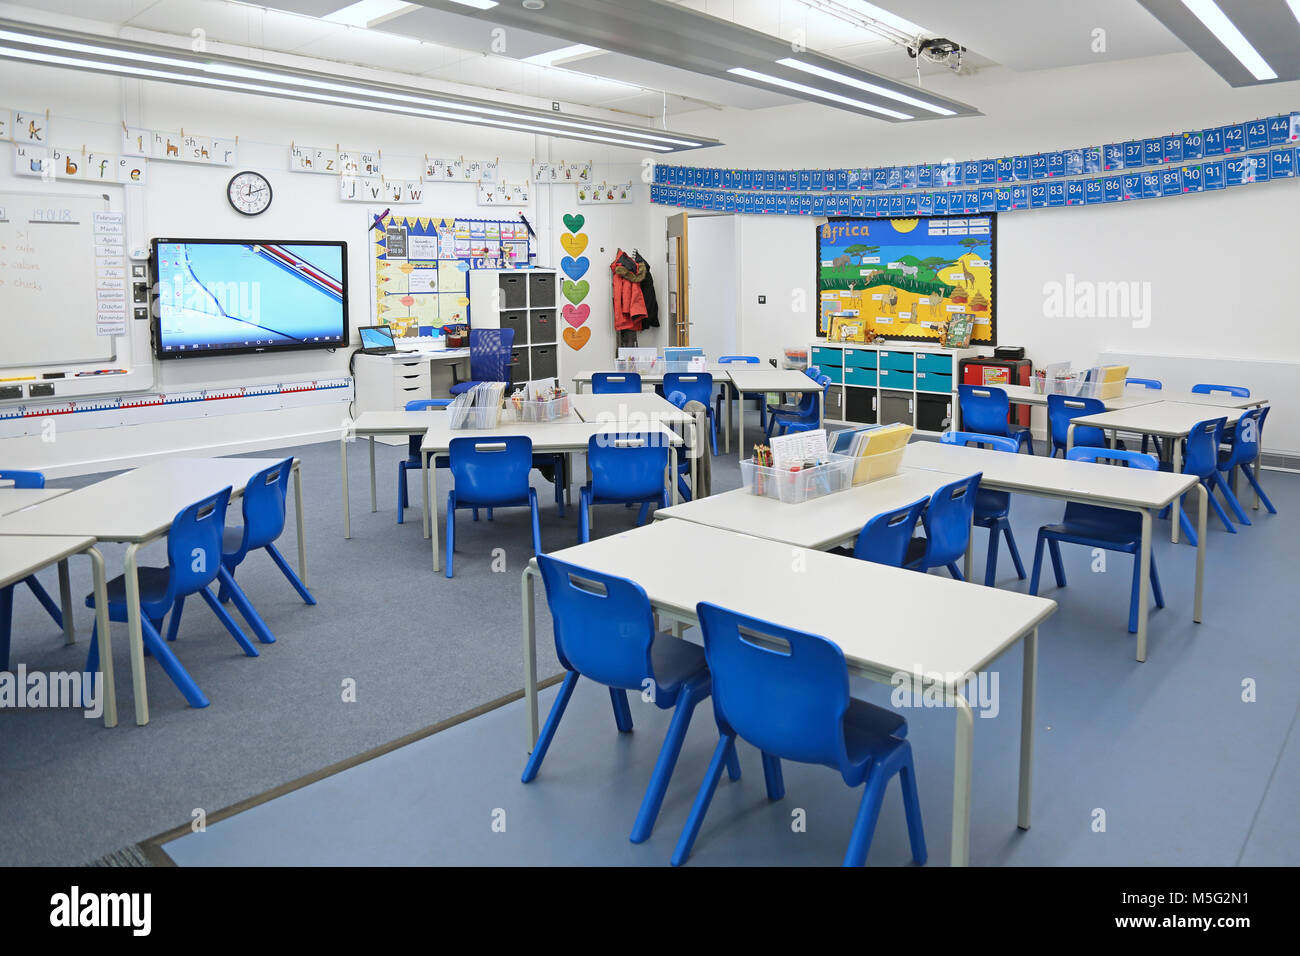 Klassenzimmer in einem neu gebauten London Grundschule. Zeigt die Schreibtische in Gruppen angeordnet. Stockfoto